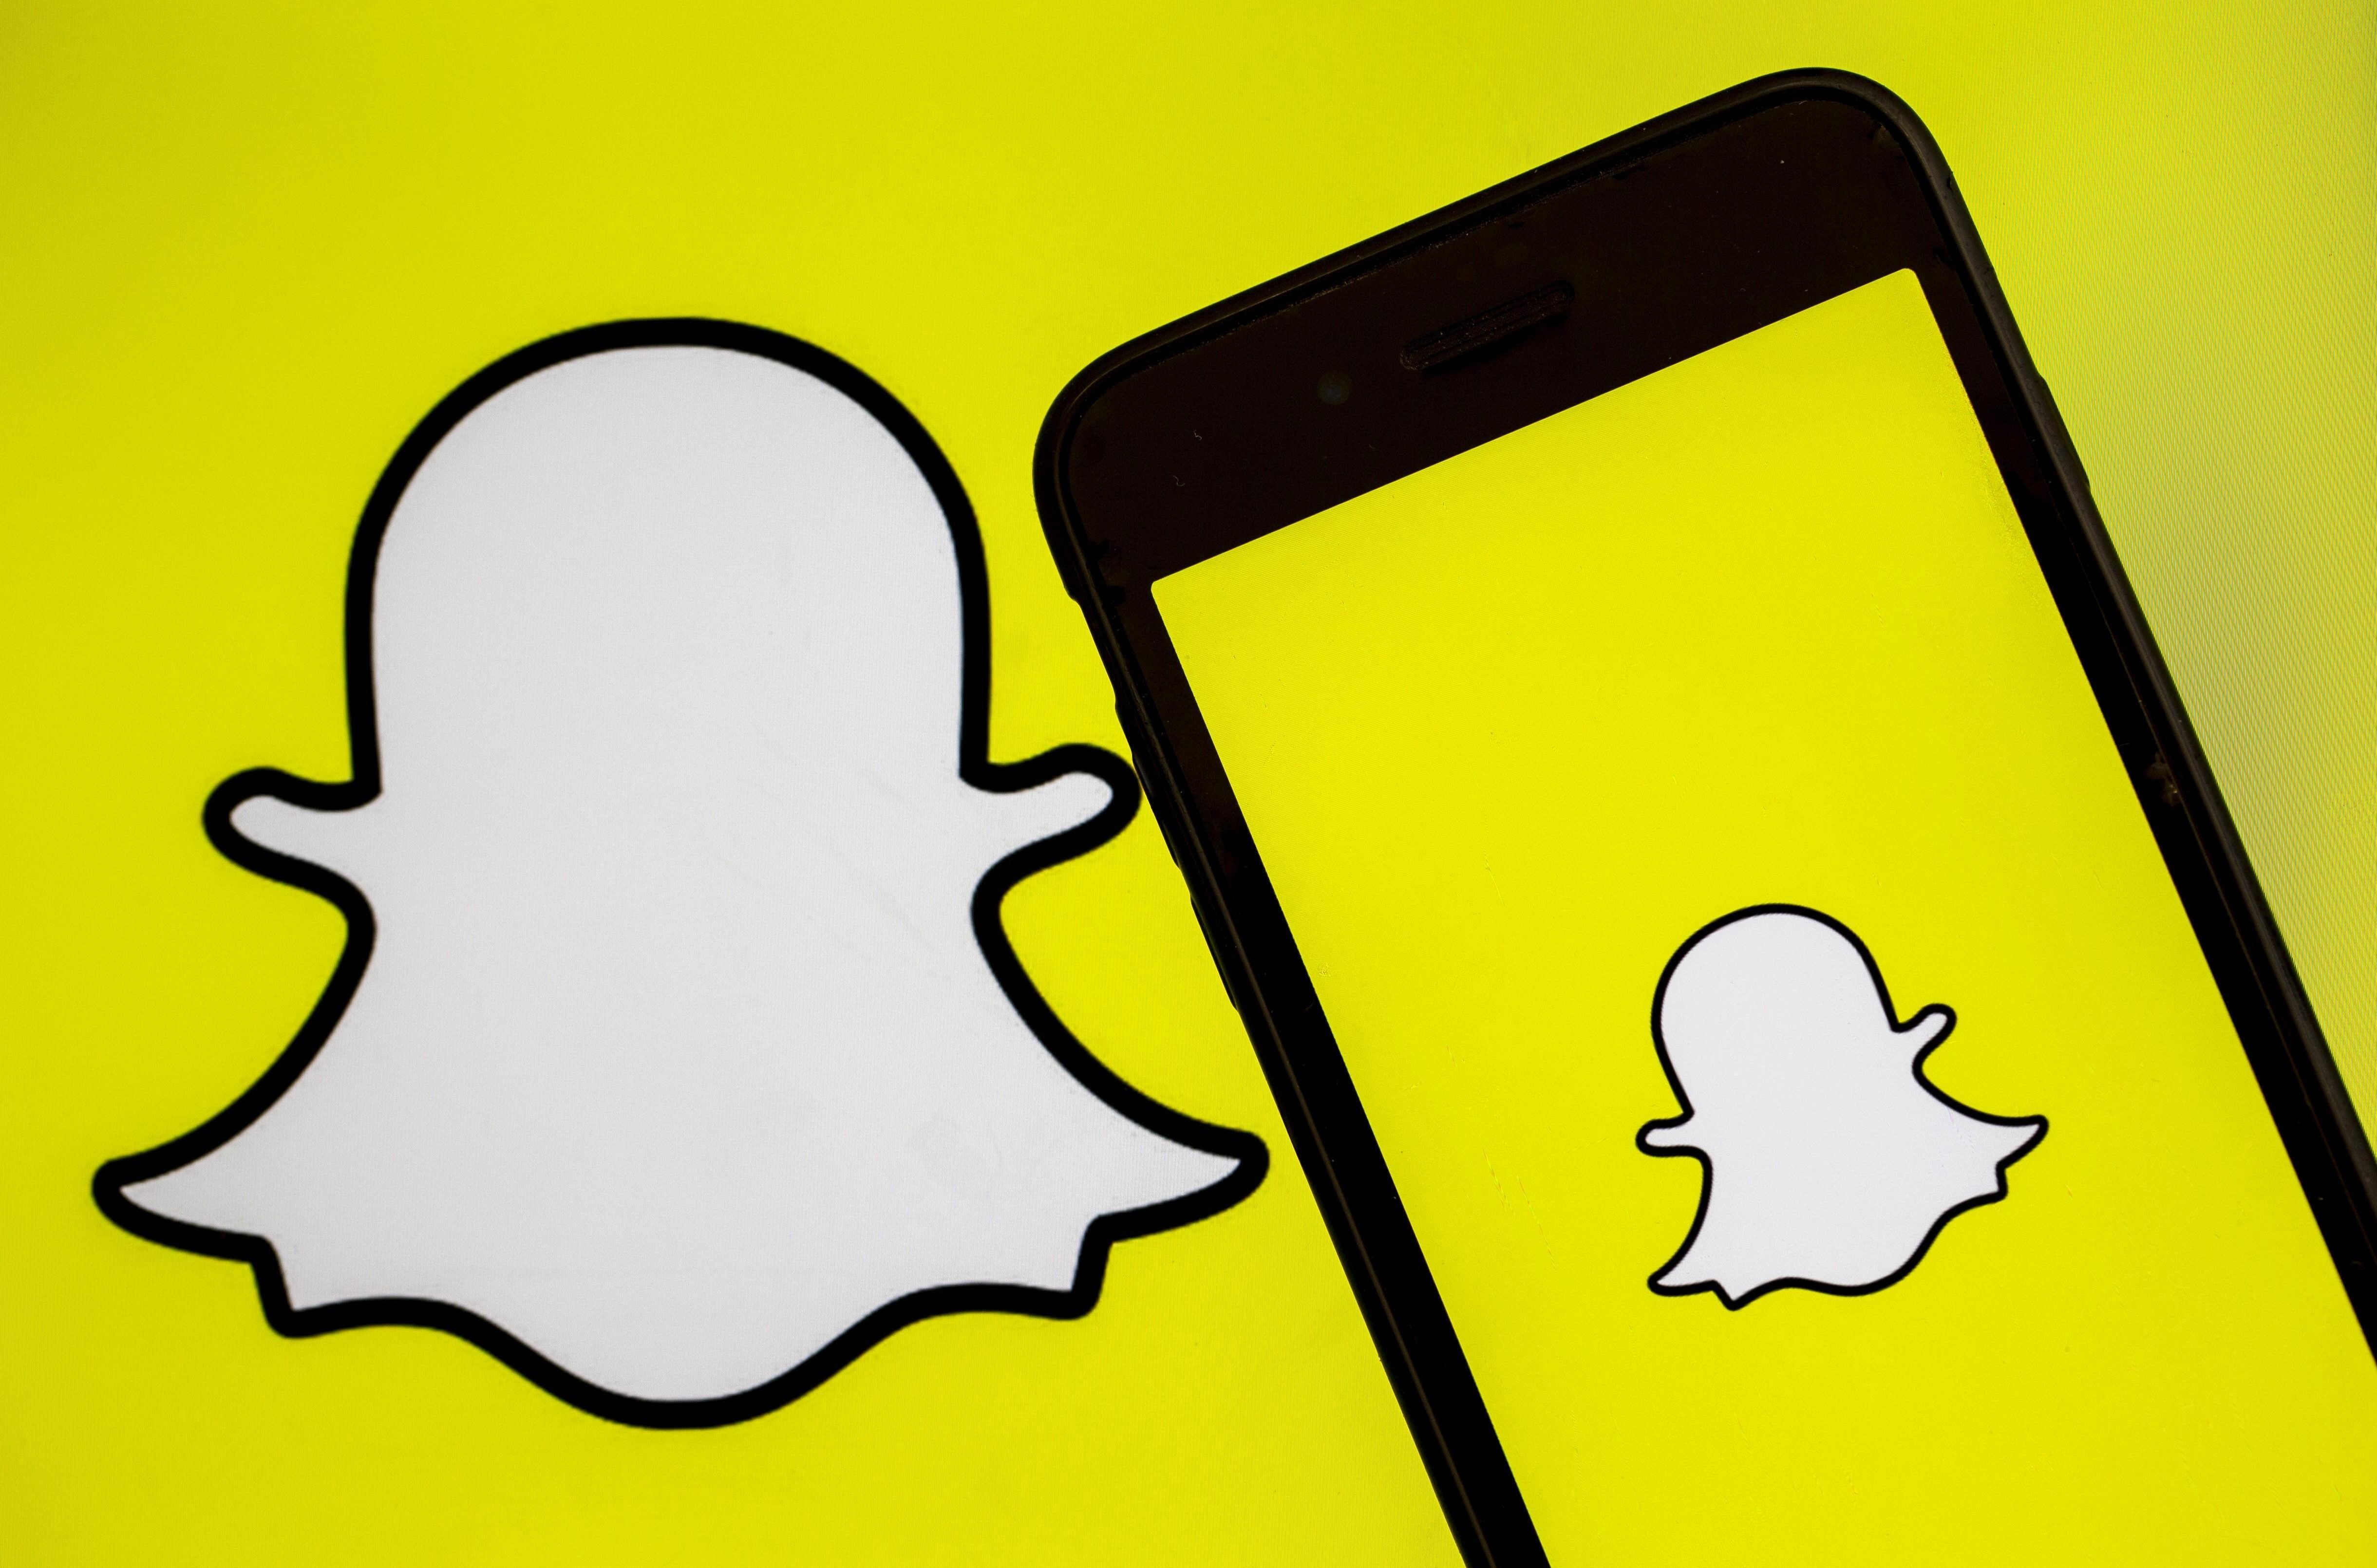   Snapchat هو أحد التطبيقات الأكثر استخدامًا